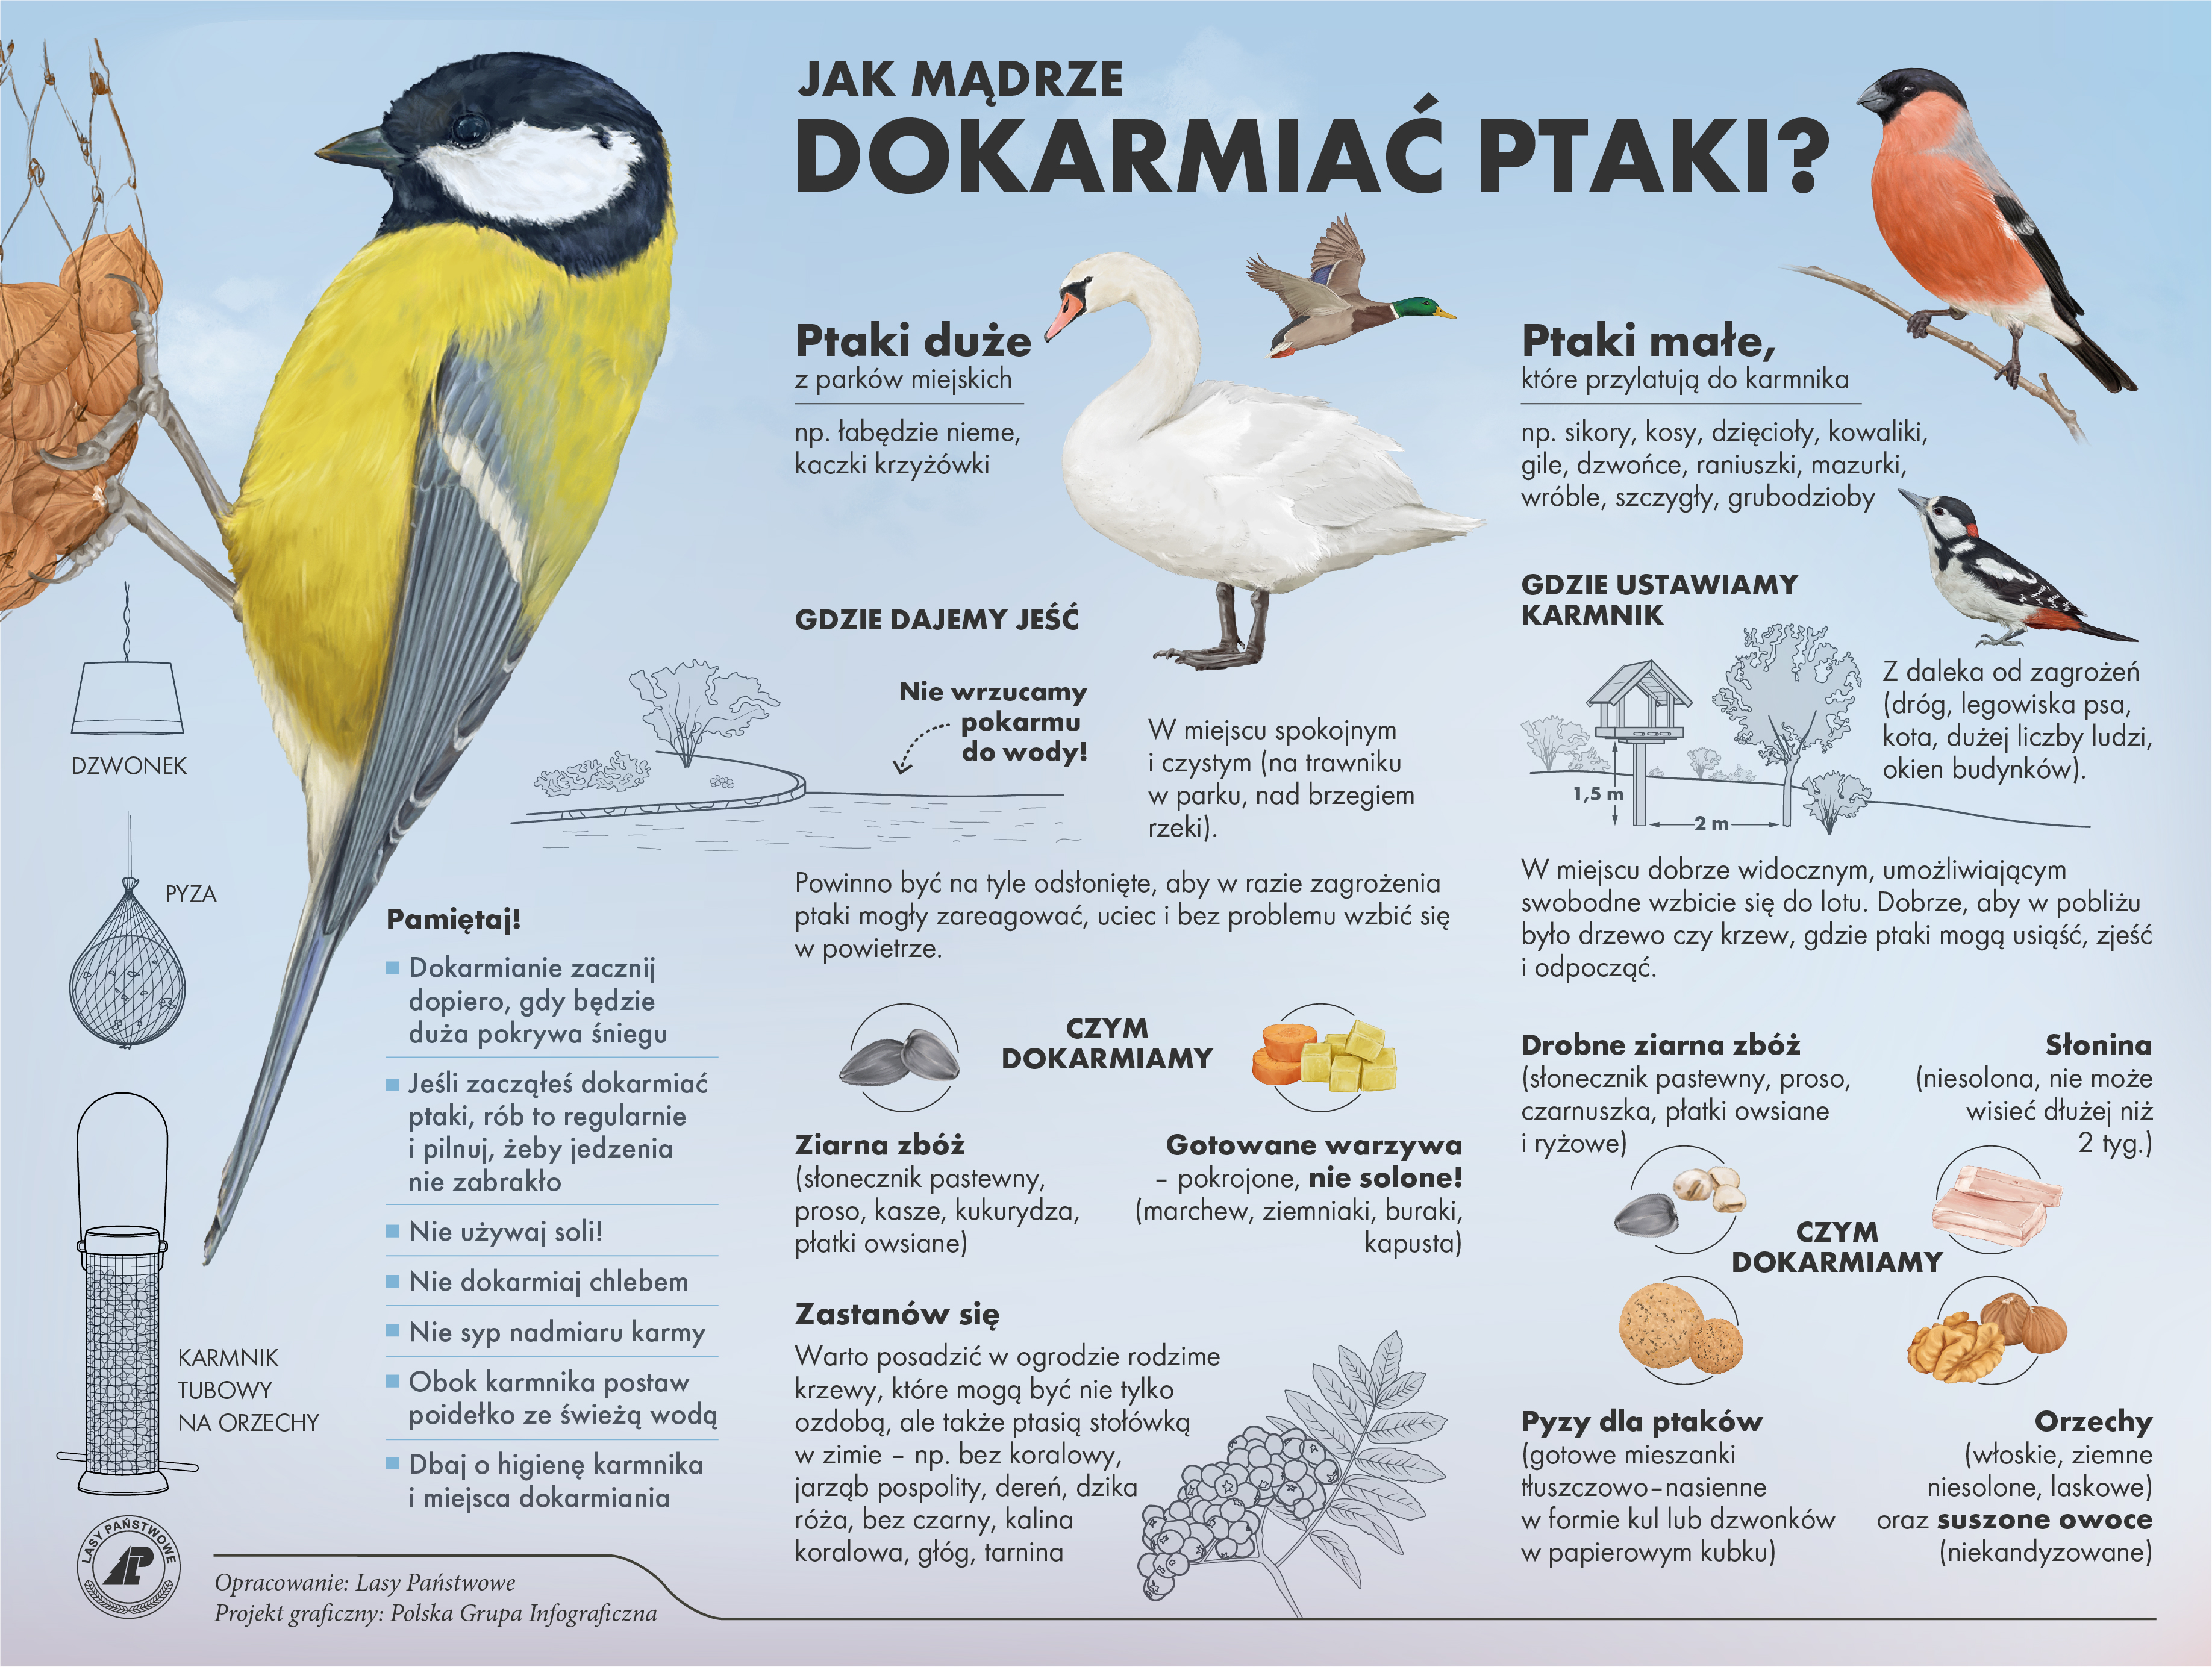 Zdjęcie przedstawia infografikę dotyczącą wskazówek na temat dokarmiania ptaków. 